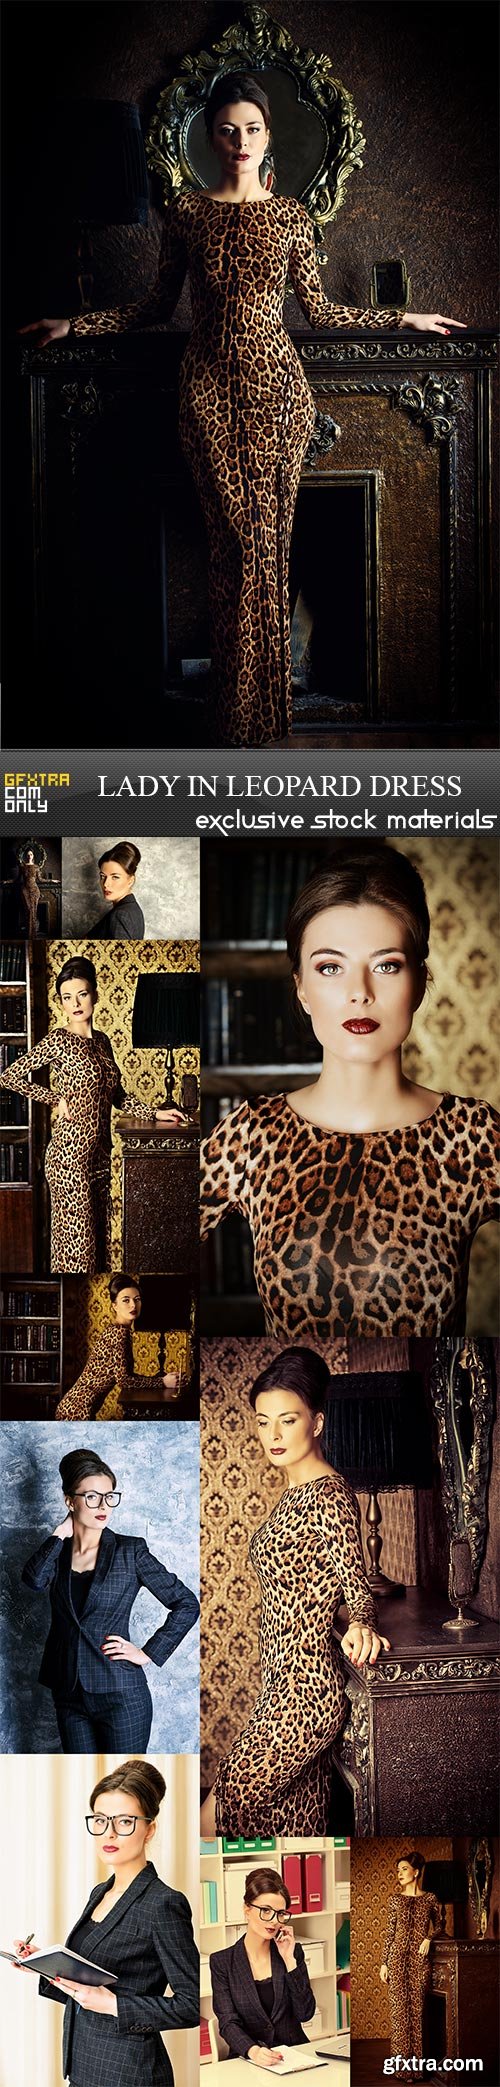 lady in leopard dress, 10 x UHQ JPEG